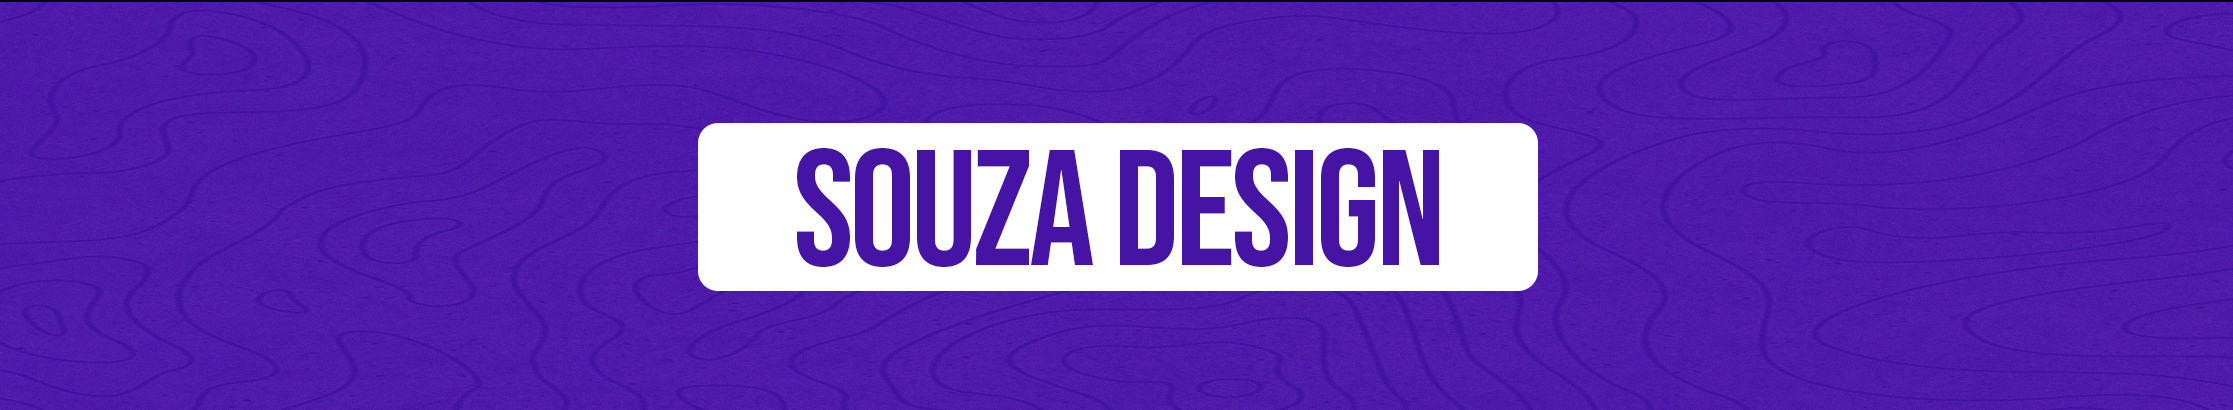 Banner de perfil de Souza Design